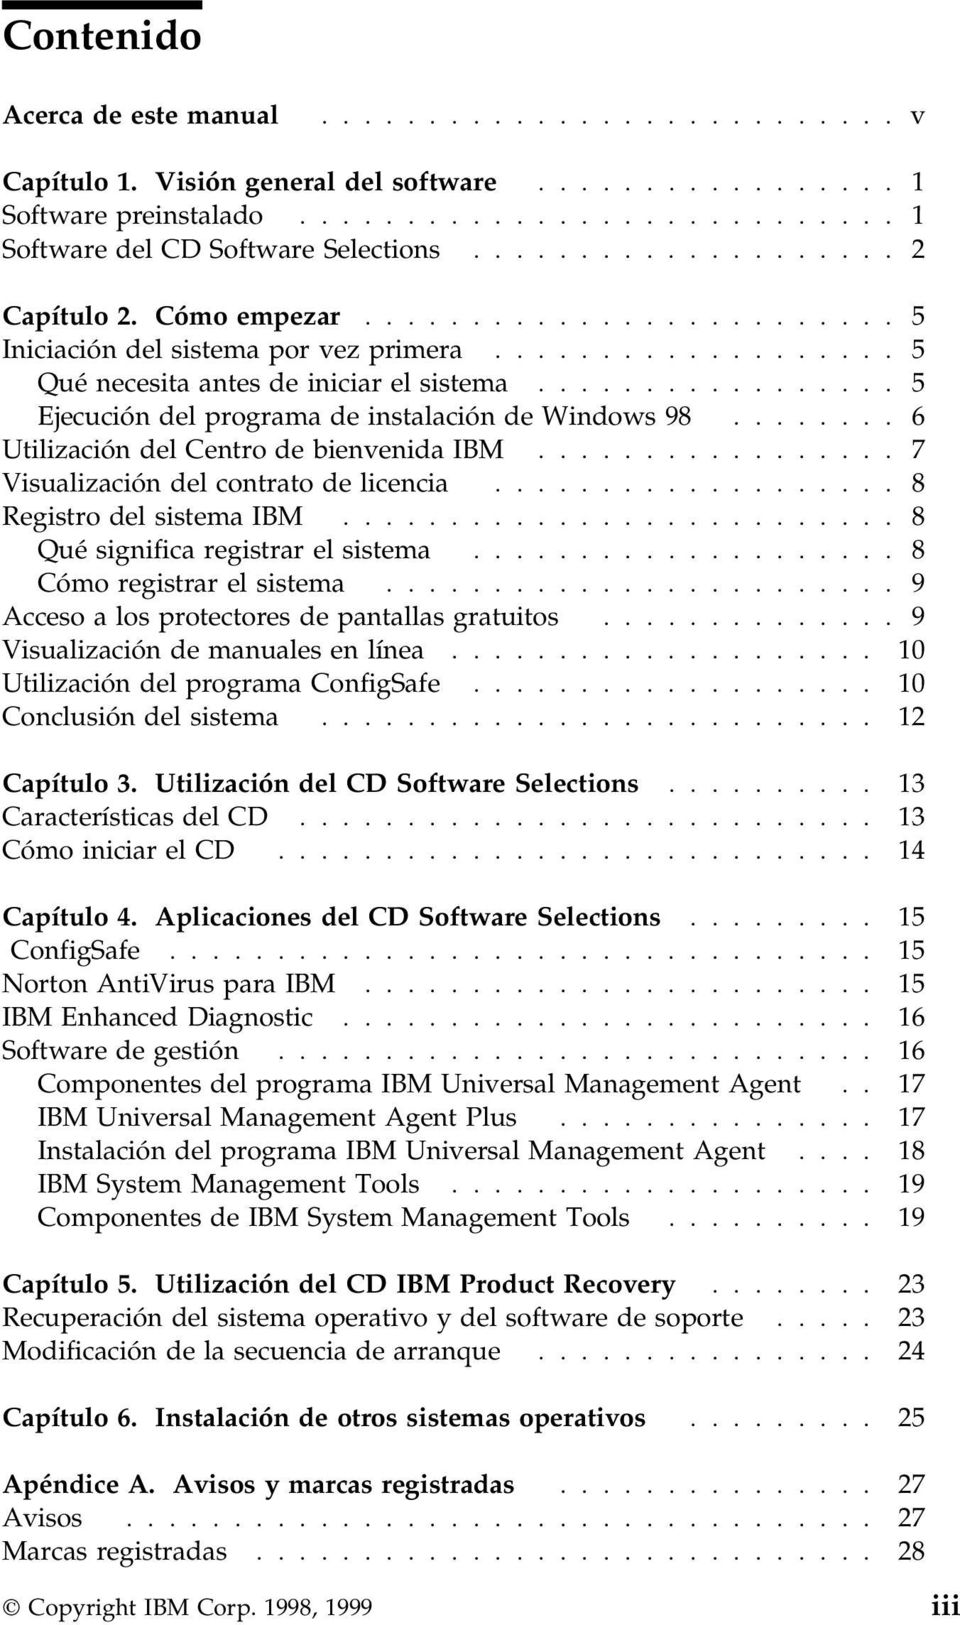 ................ 5 Ejecución del programa de instalación de Windows 98........ 6 Utilización del Centro de bienvenida IBM................. 7 Visualización del contrato de licencia.